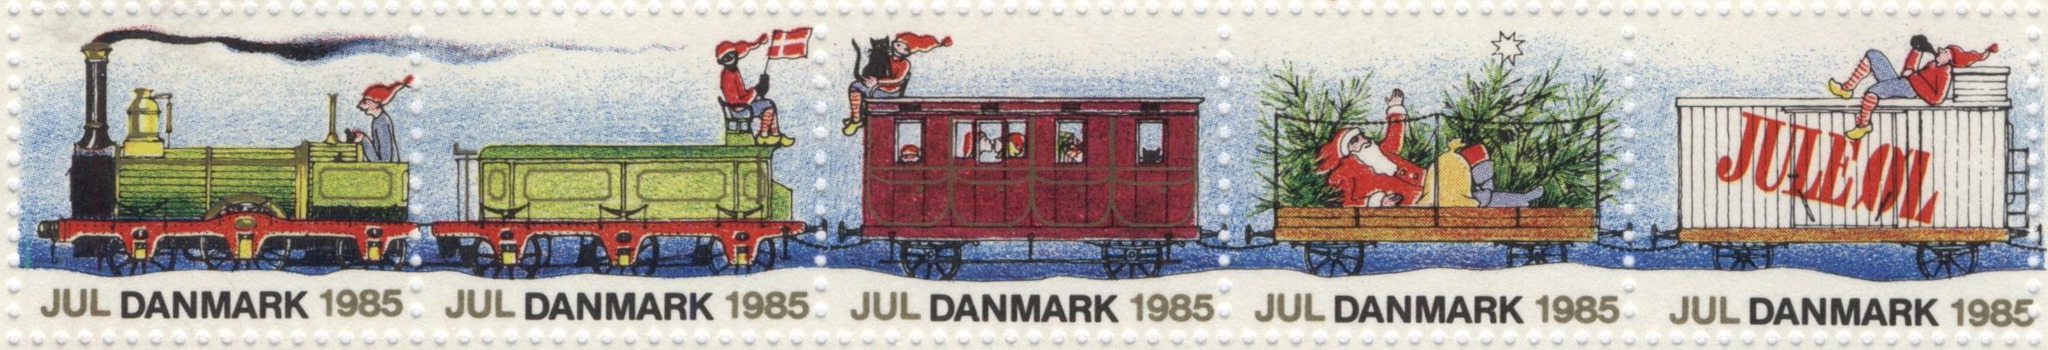 julemærket 1985 (1)